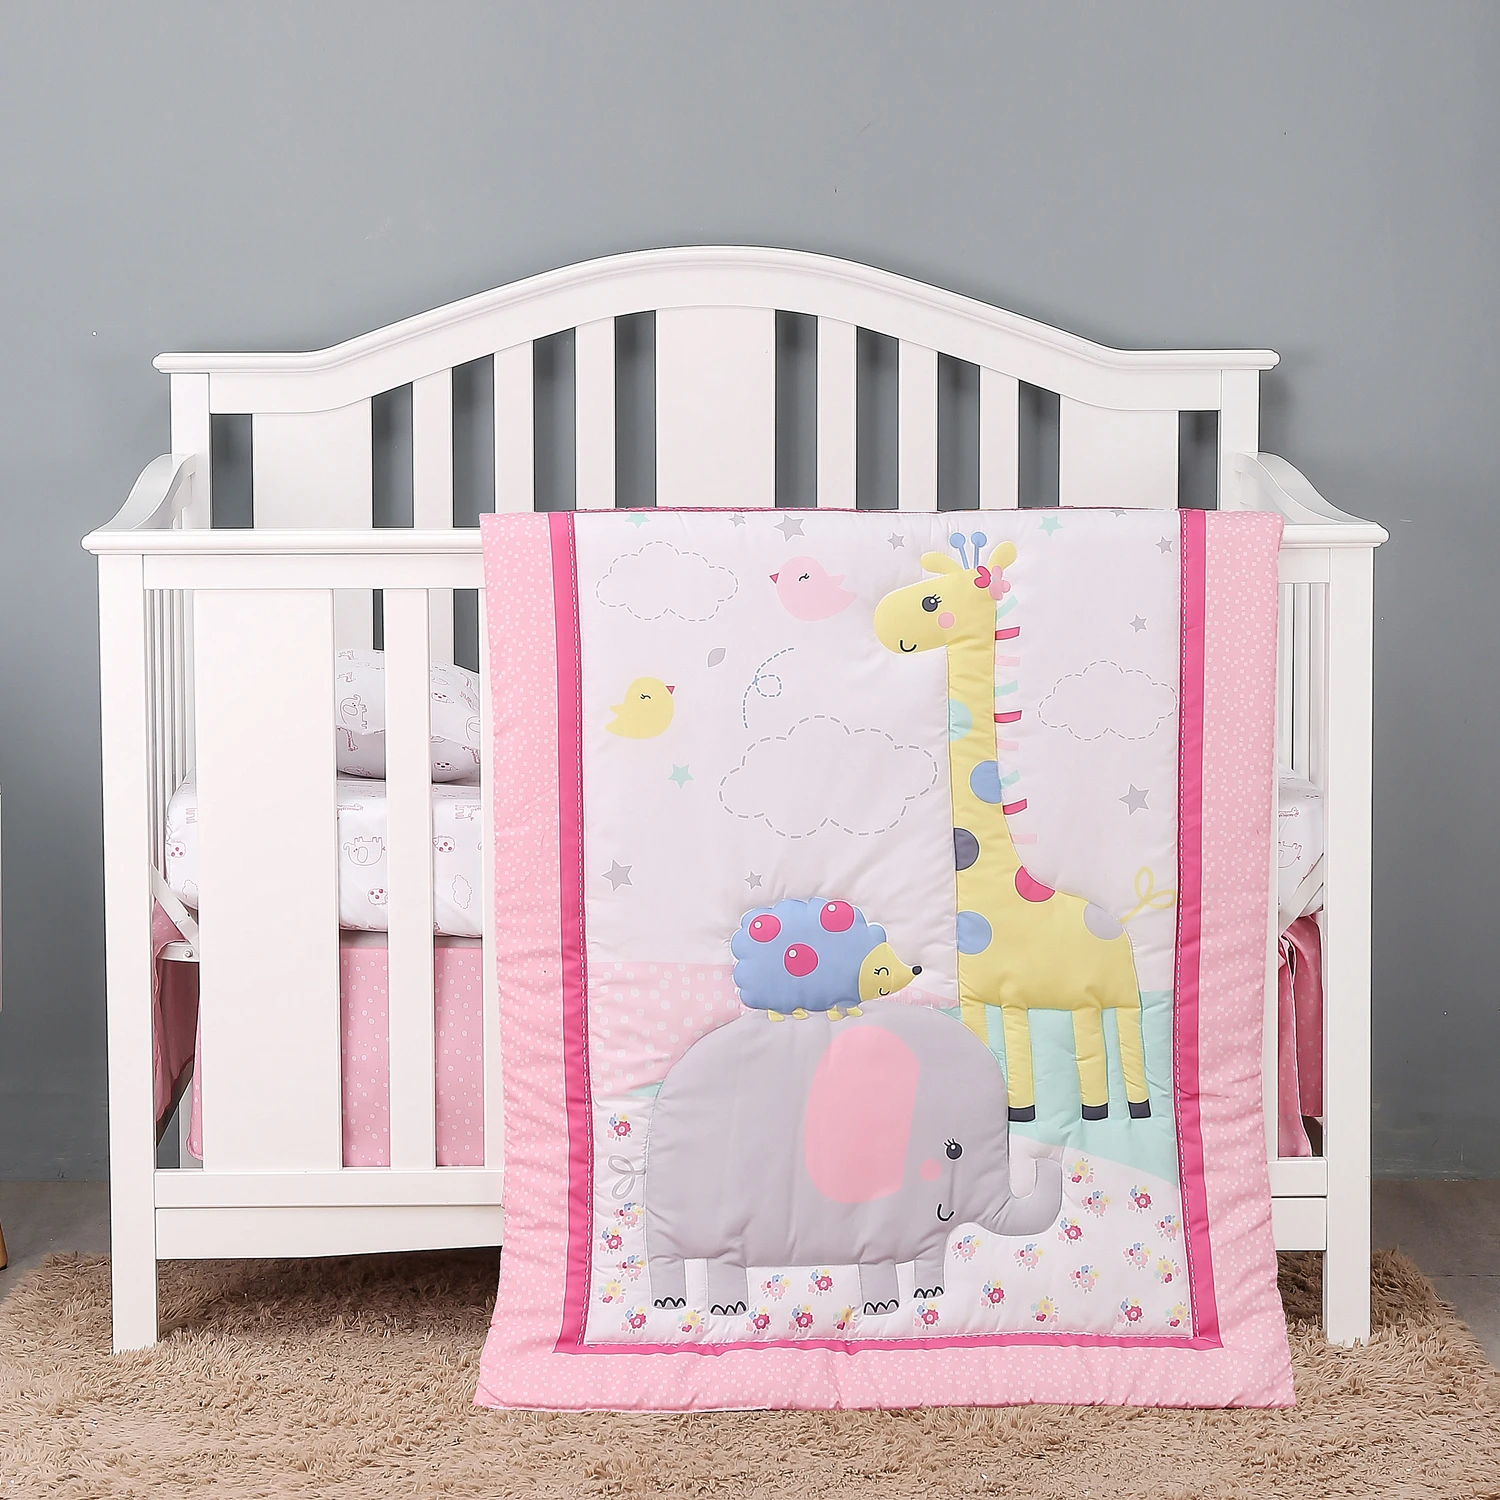 

Комплект постельного белья для детской кроватки из 3 предметов, розовая серая детская кроватка со слоном, жирафом, одеяло, простыня, юбка для...